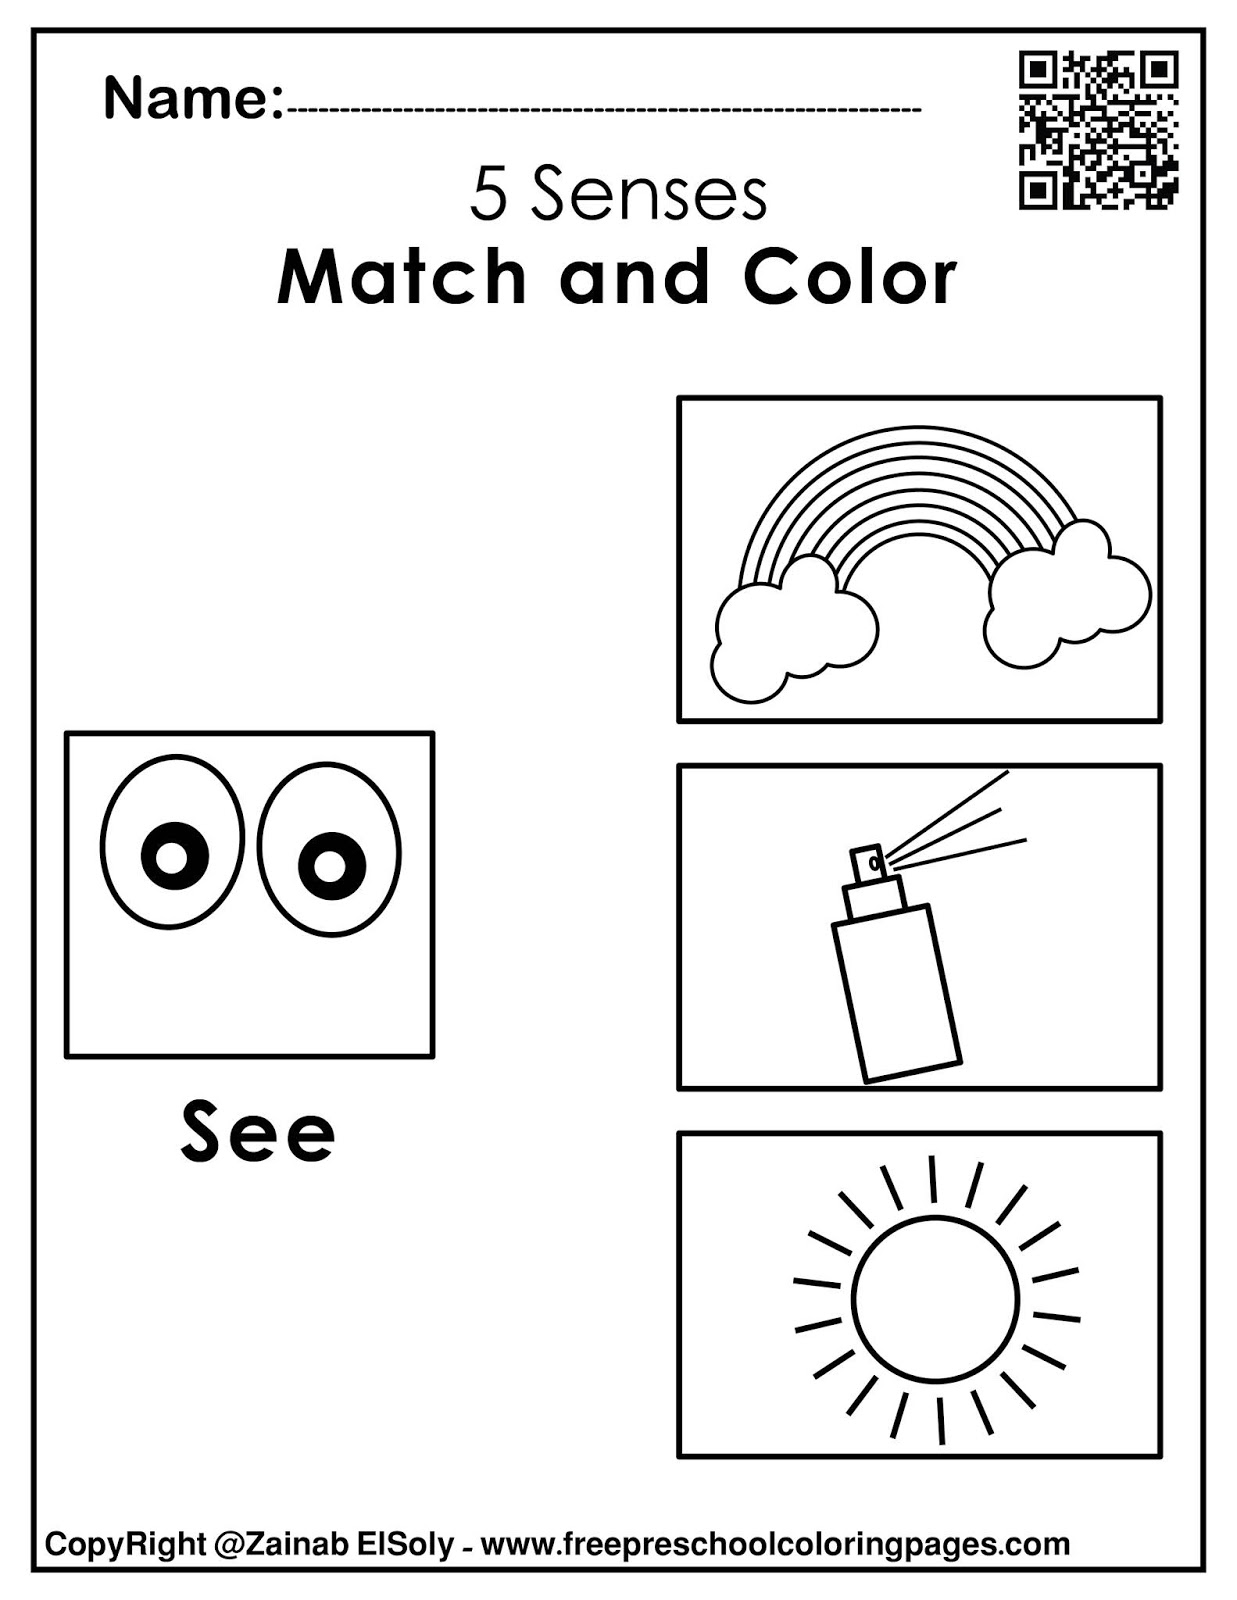 Set of 5 senses activities for kids